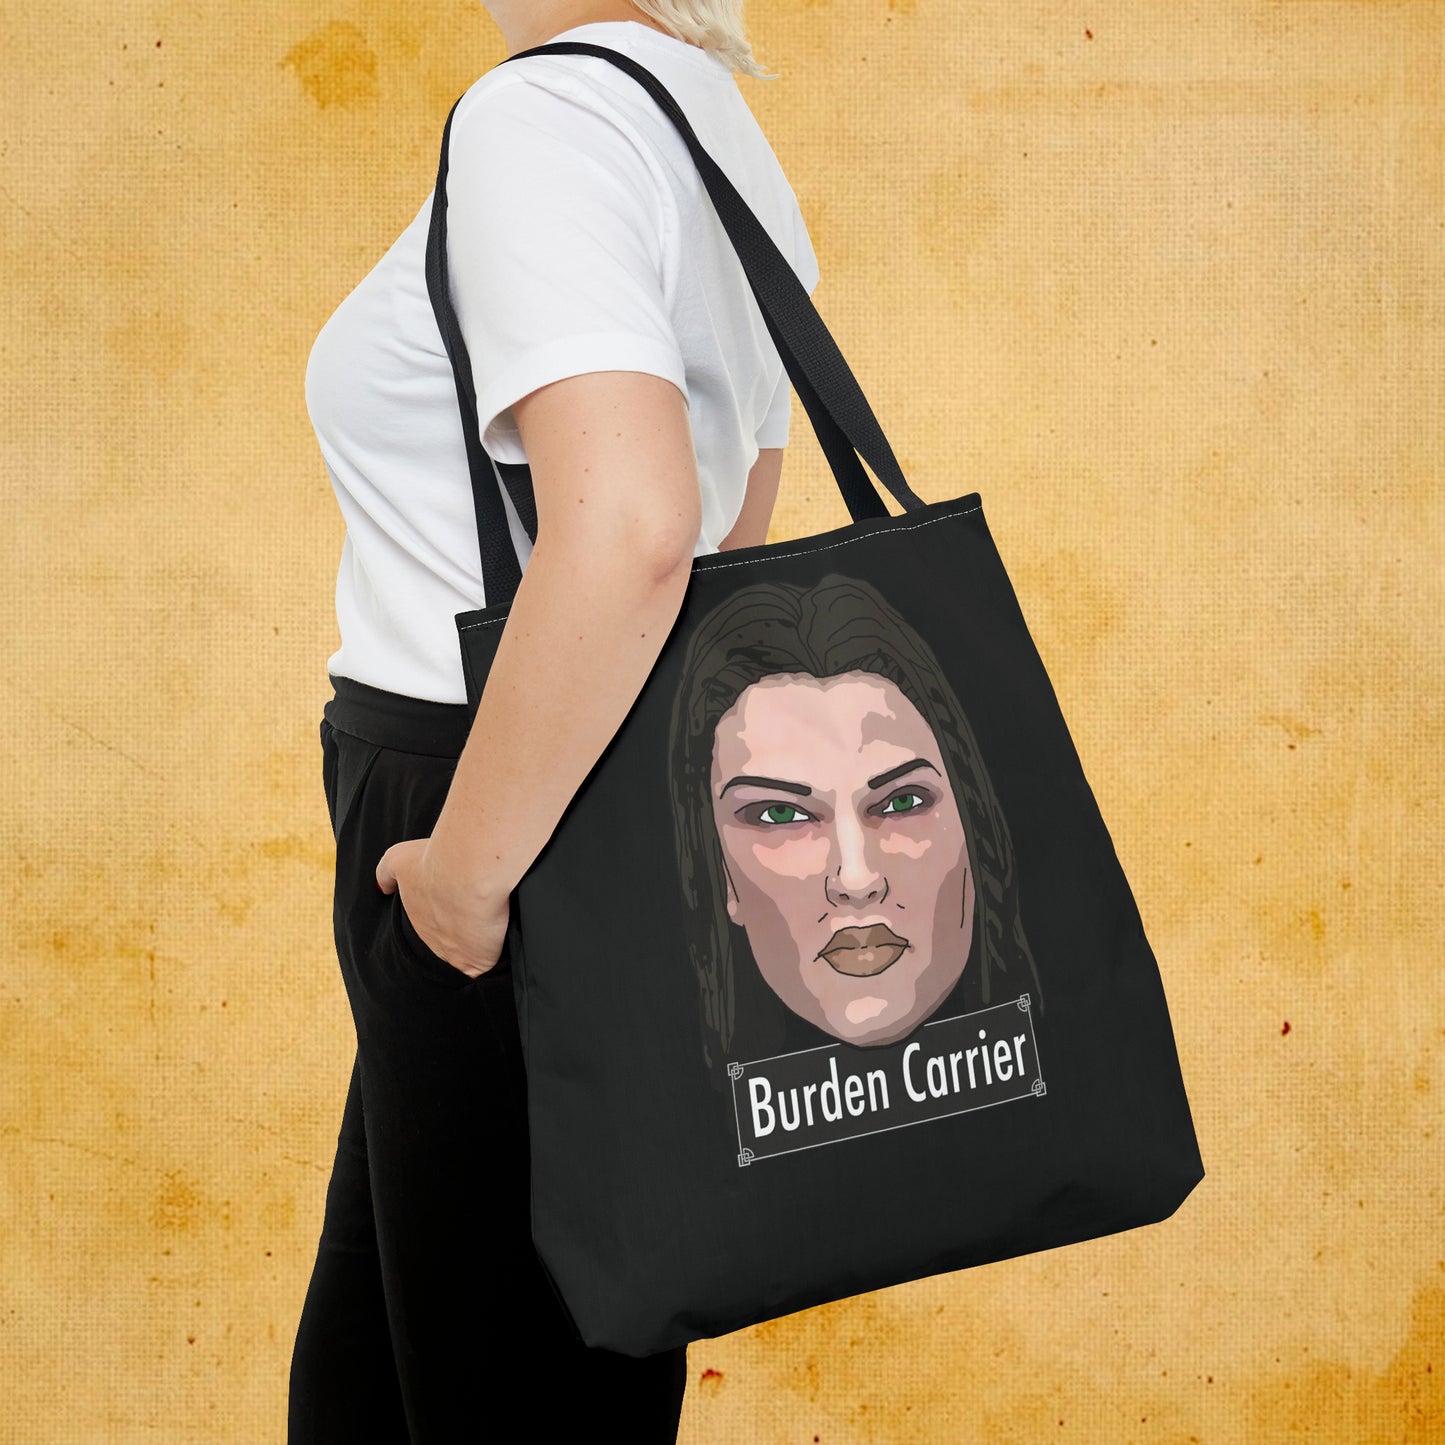 Burden Carrier Tote Bag